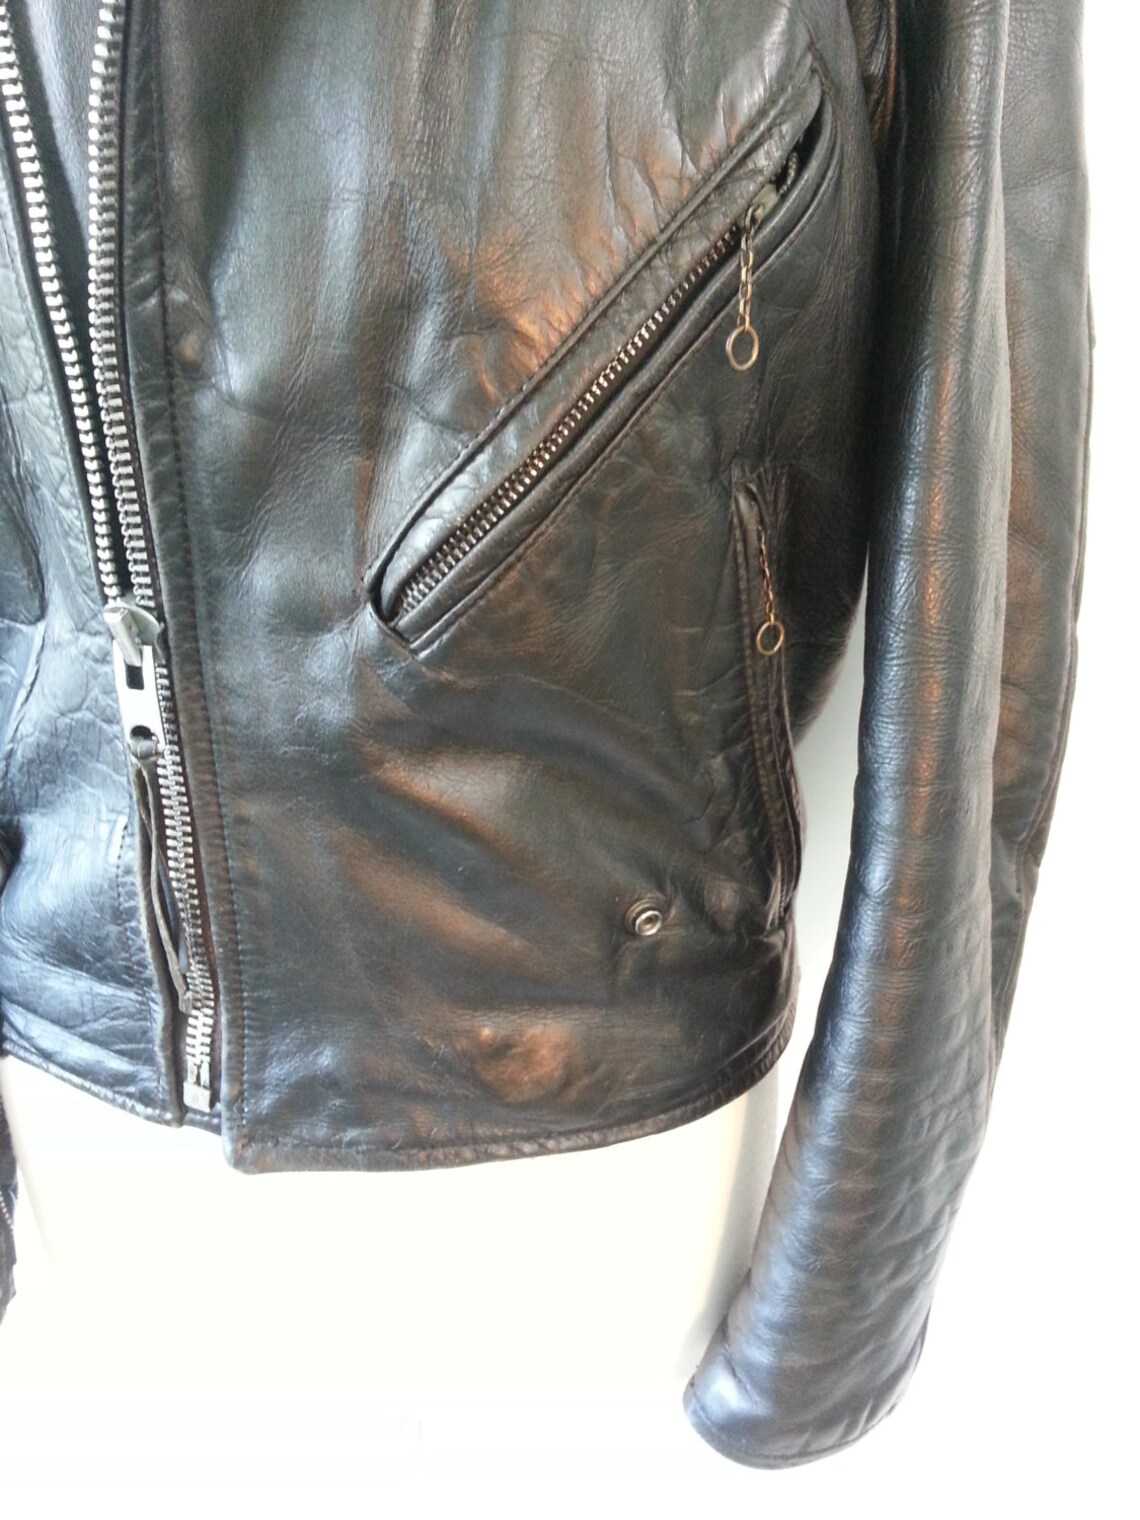 Harley Davidson Cycle Champ Black Leather Mid-century Jacket | Etsy